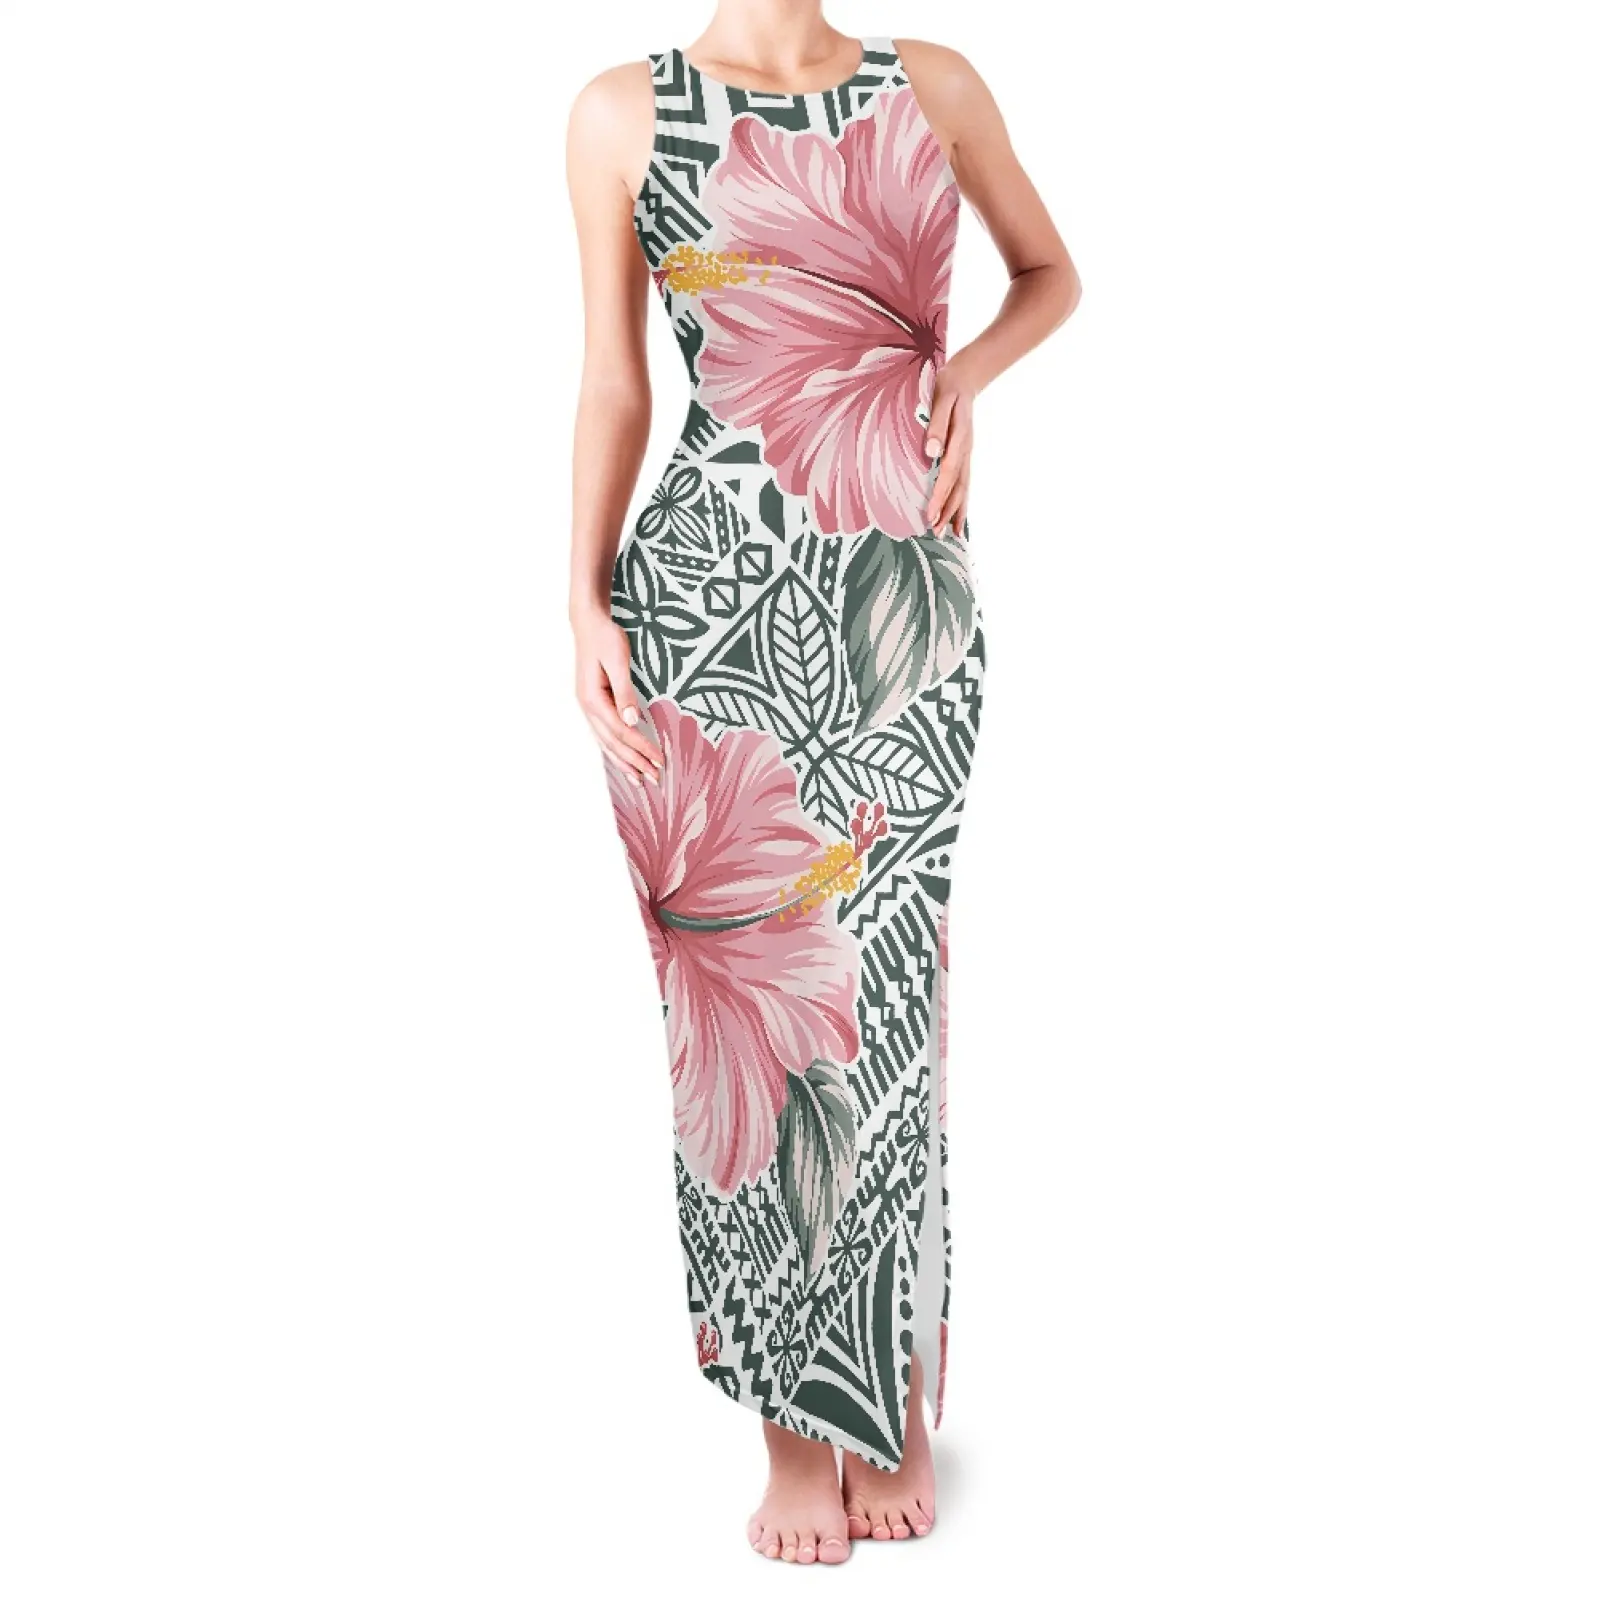 Fashion Polynesian Texture Round Neck Double Slit Sundress Ladies Drop Shipping Polynesia Hibiscus Flowers Print Women's Dresses